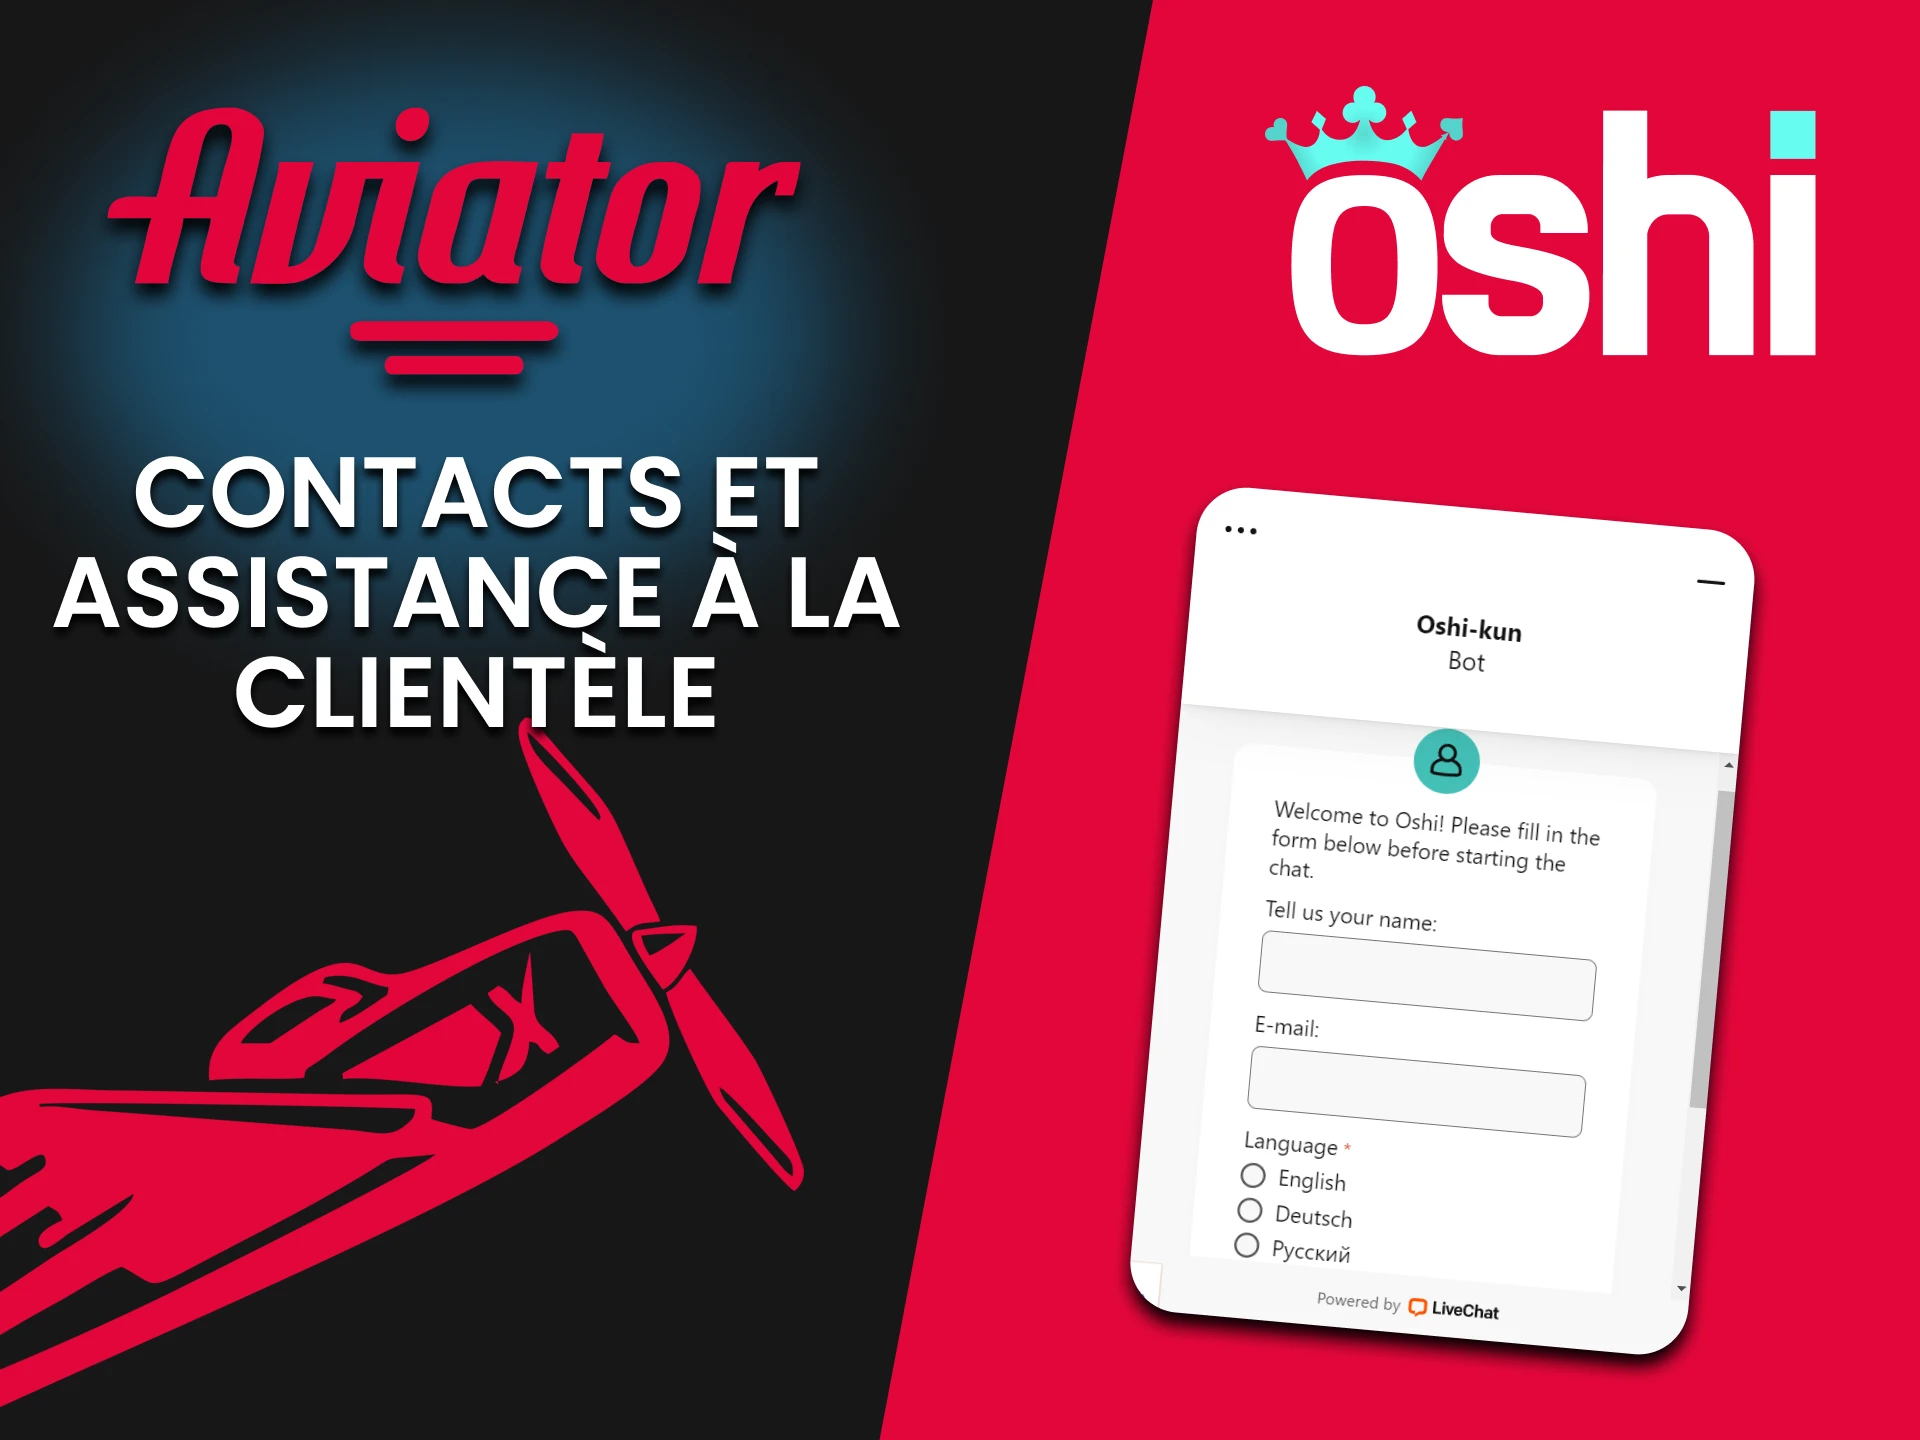 Oshi Casino propose un chat en direct pour assister les joueurs d'Aviator.